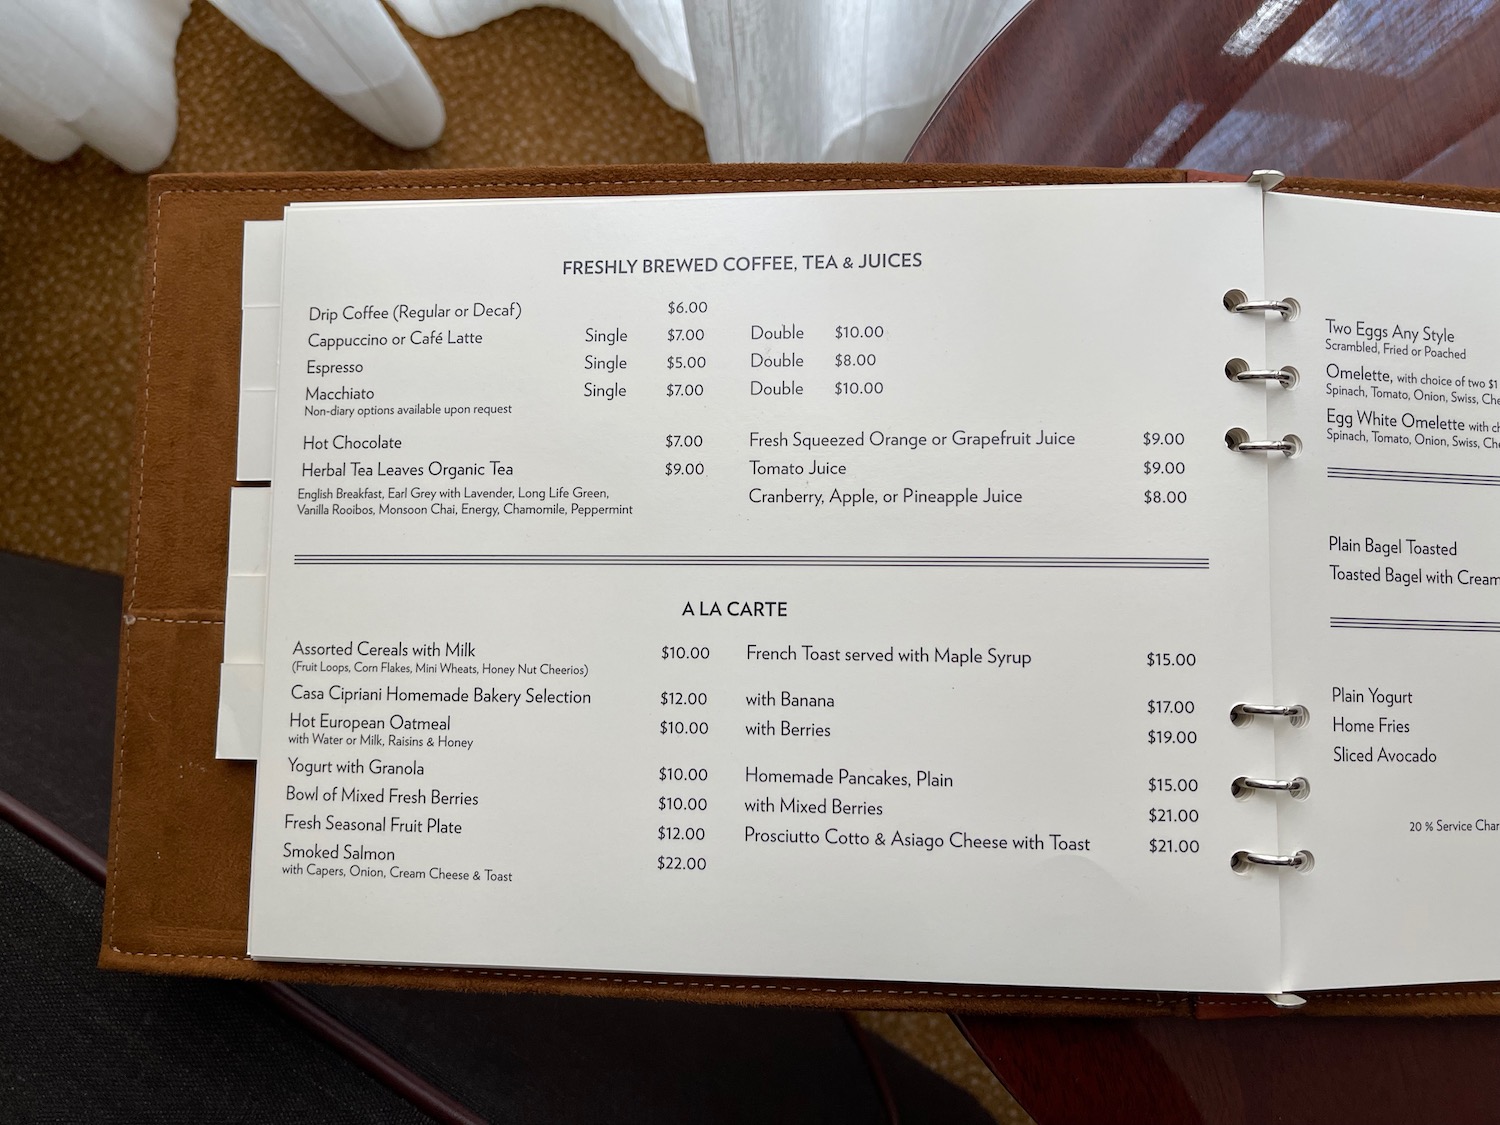 a menu in a leather cover